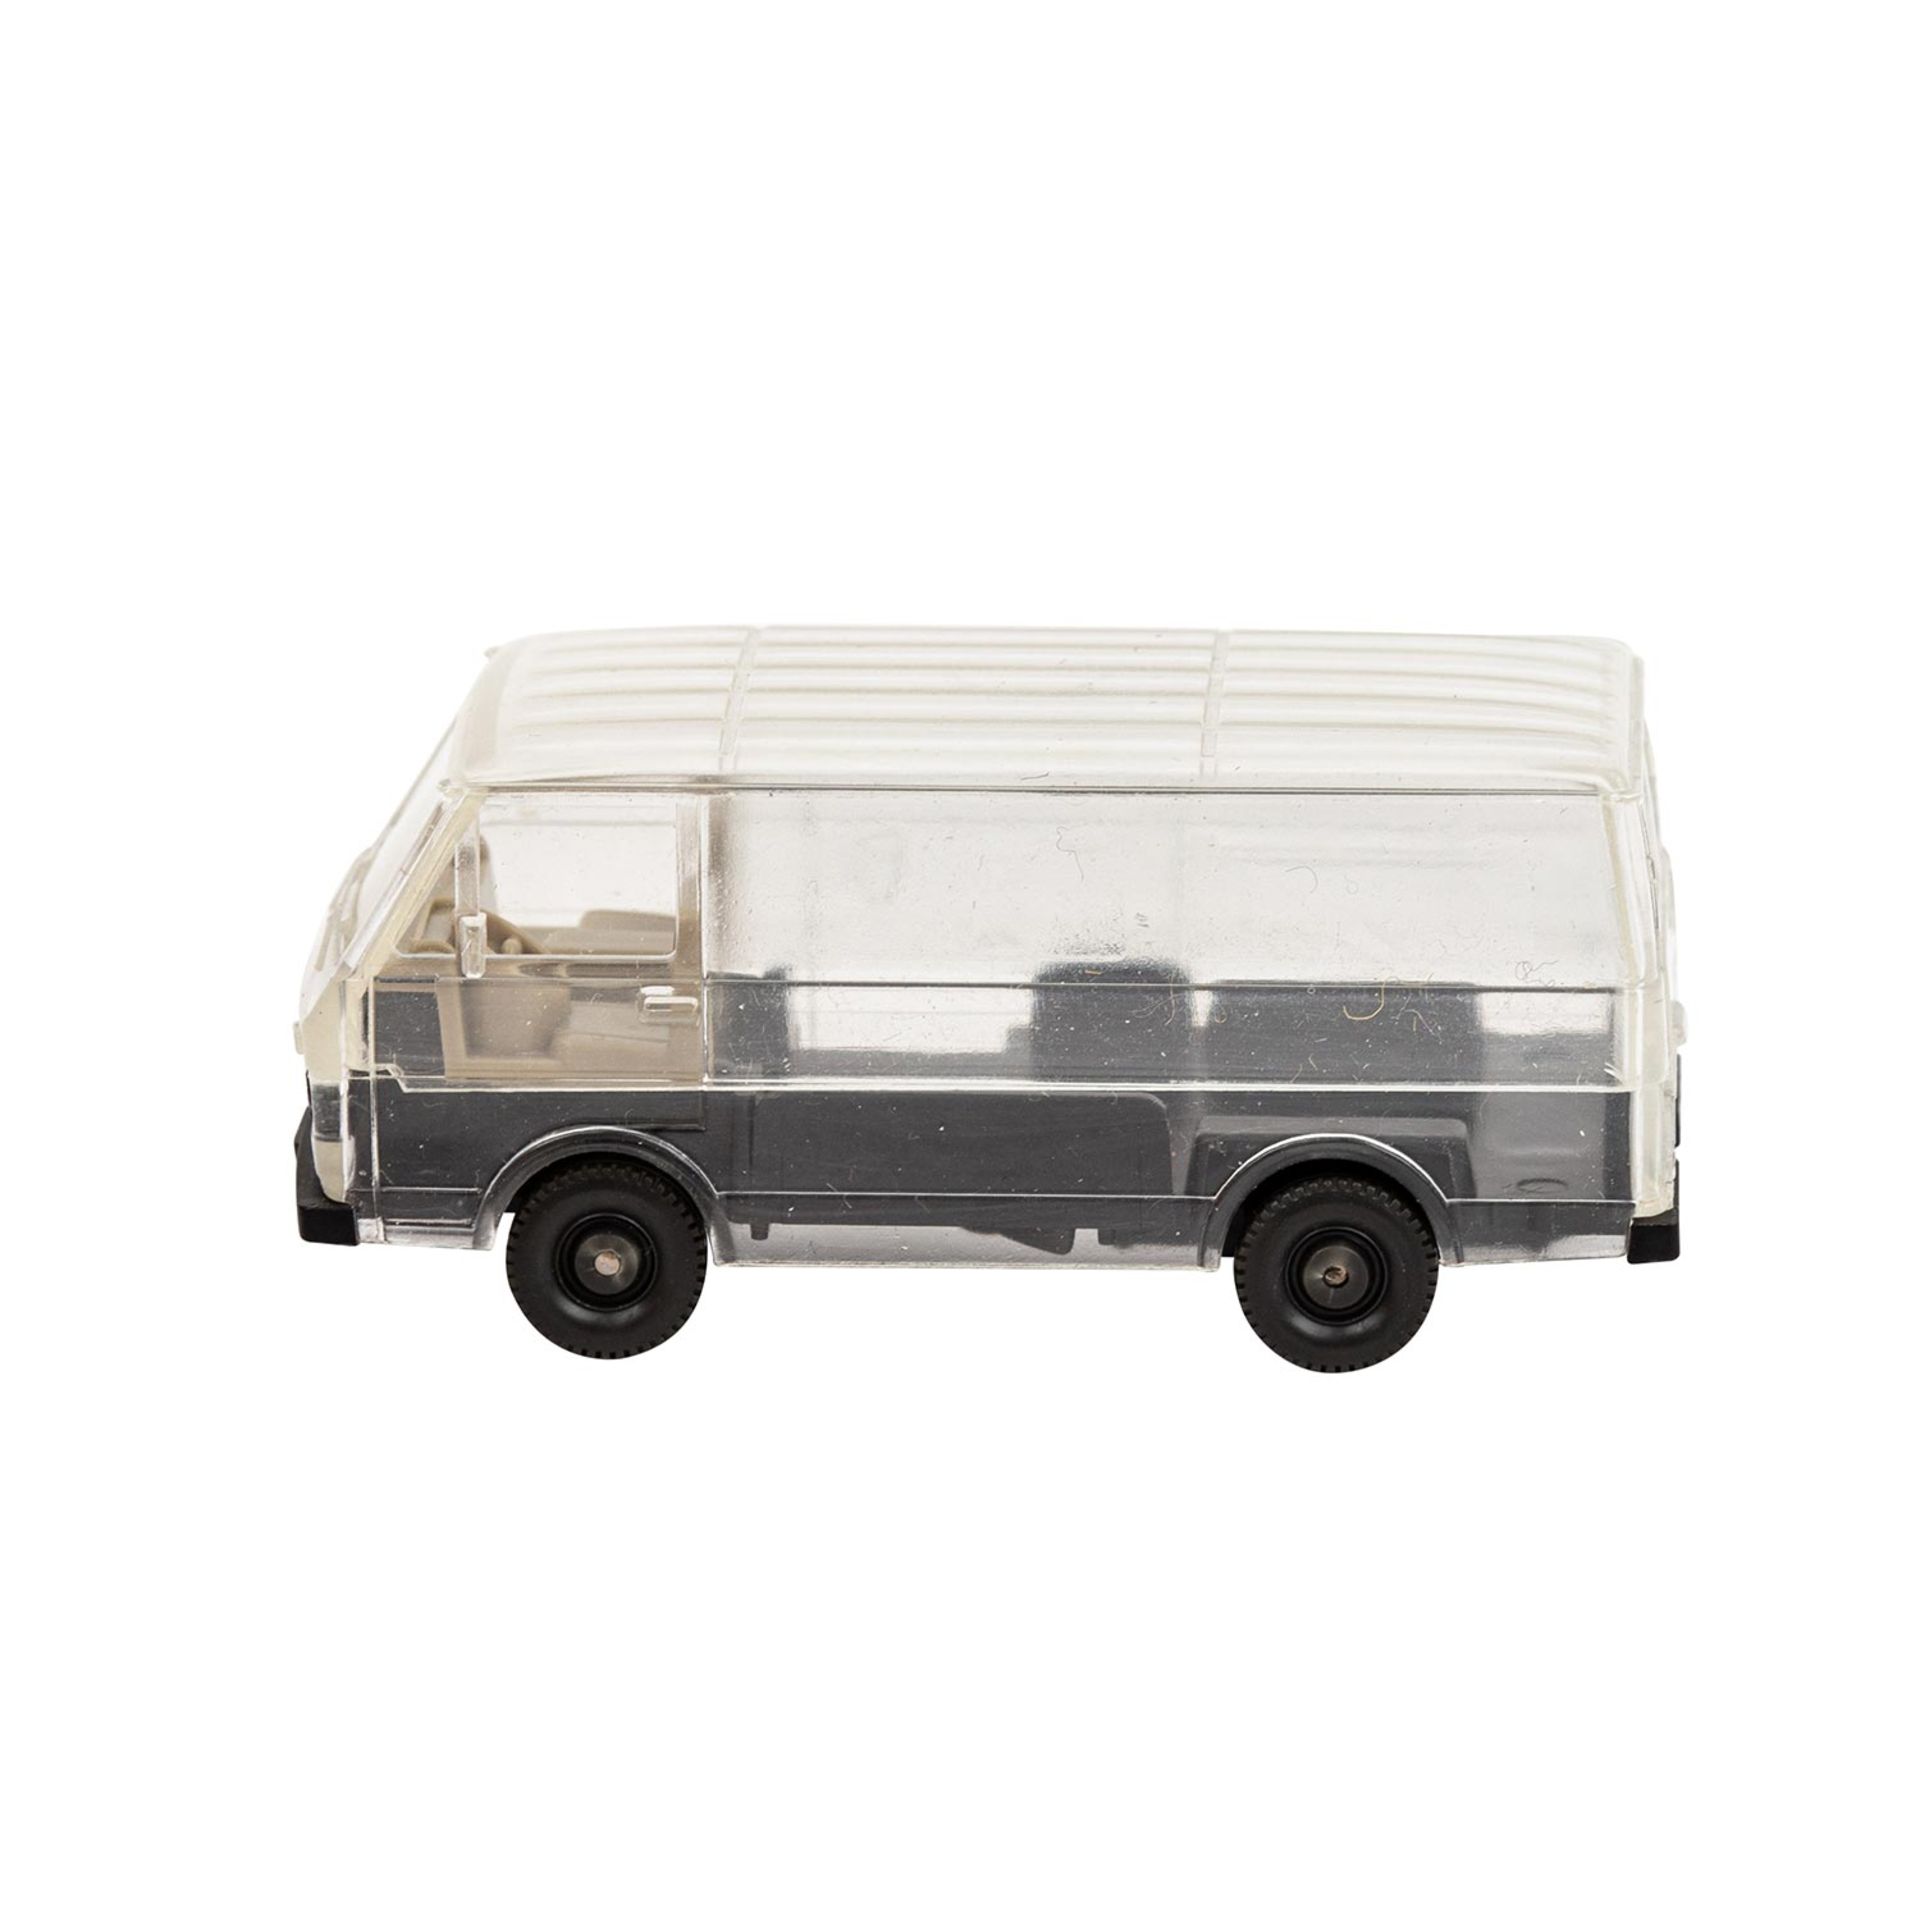 WIKING VW LT Bus, Vorserie um 1979-80,transparente Karosserie, schwarzes Chassis, inte - Bild 2 aus 5